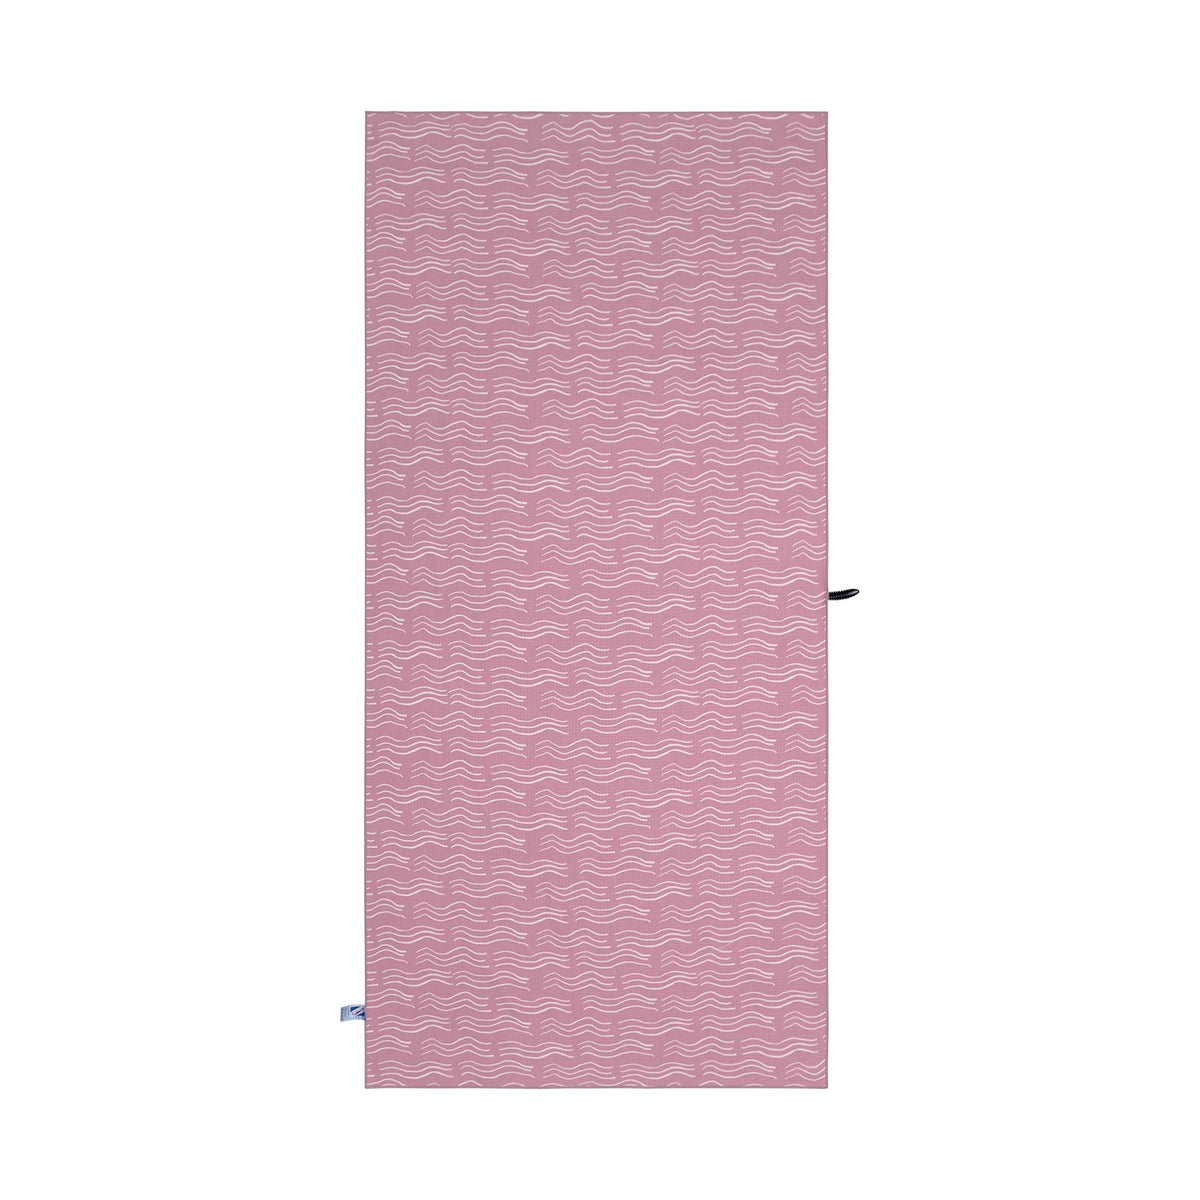 Pink - Sand Free Towel by Bermies